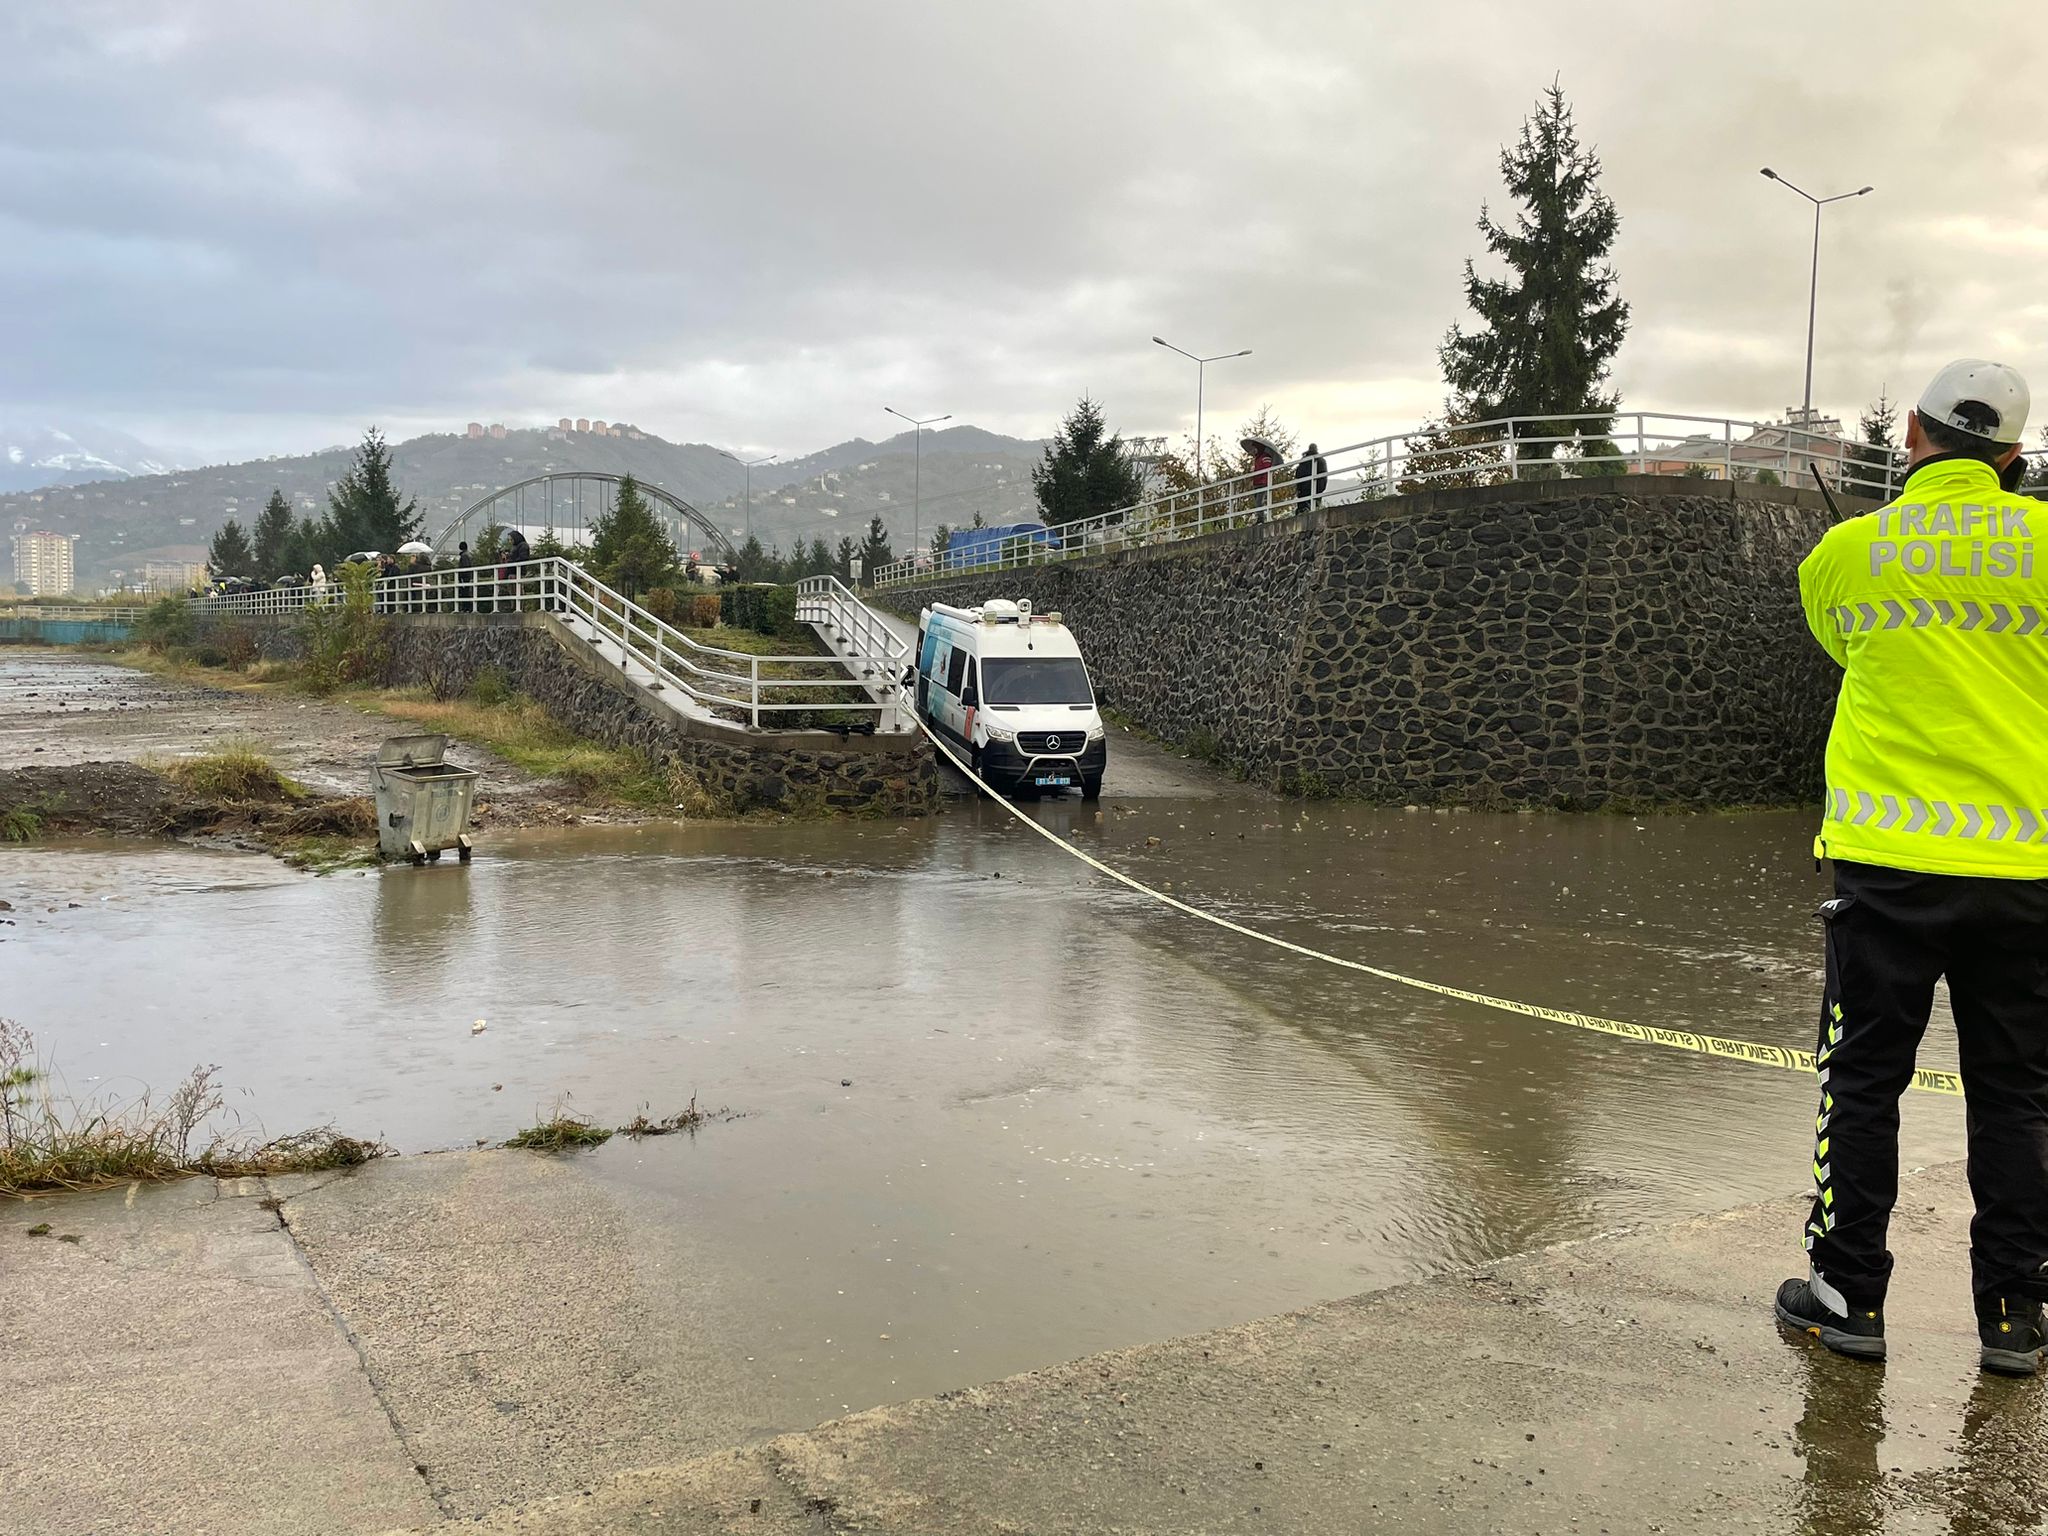 Trabzon’da dalgaların fırtınayla yükselmesi sonucu 5 askeri personel yaralandı